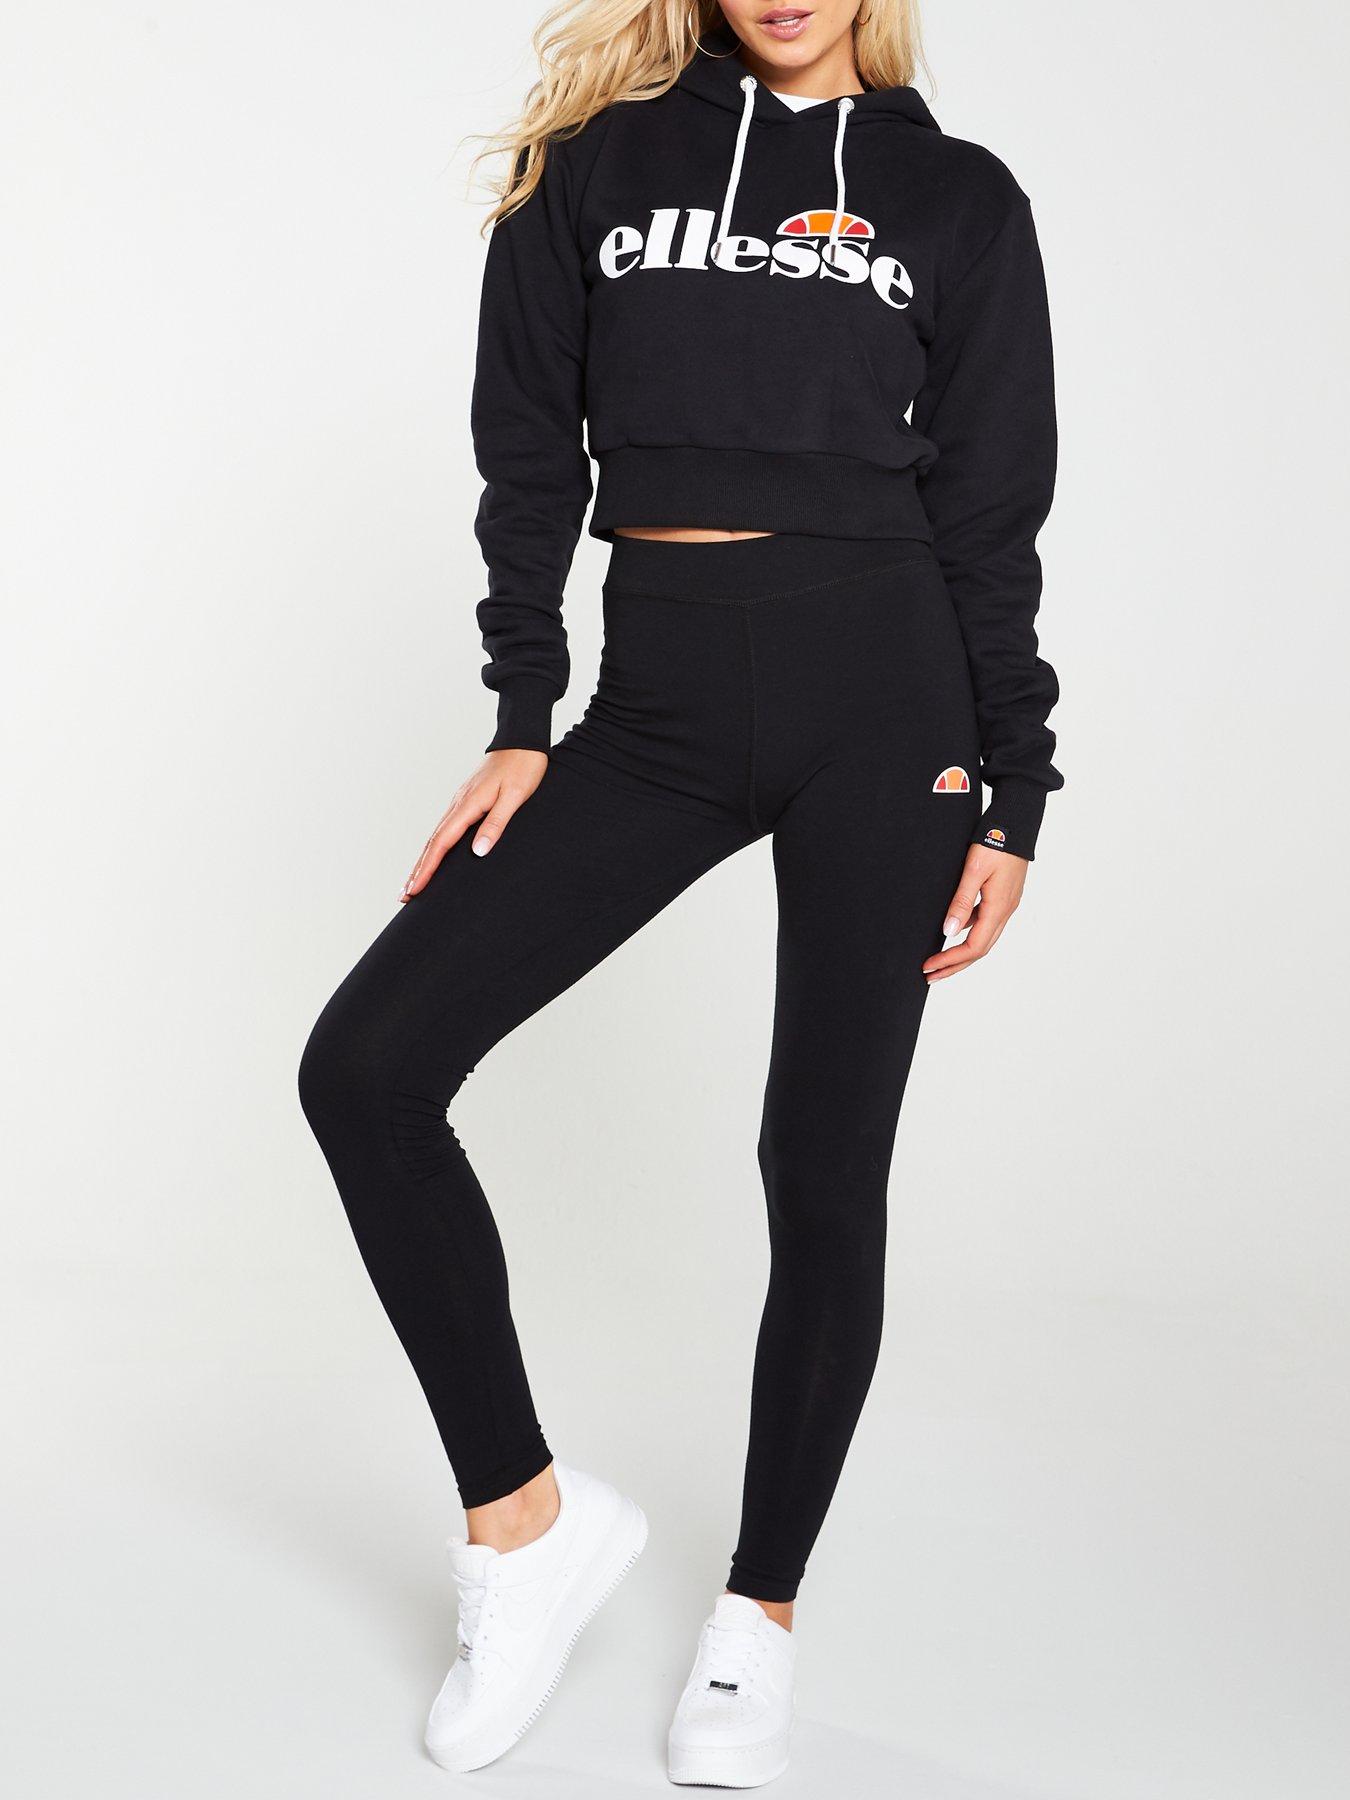 Ellesse | Ellesse Sportswear | Very.co.uk